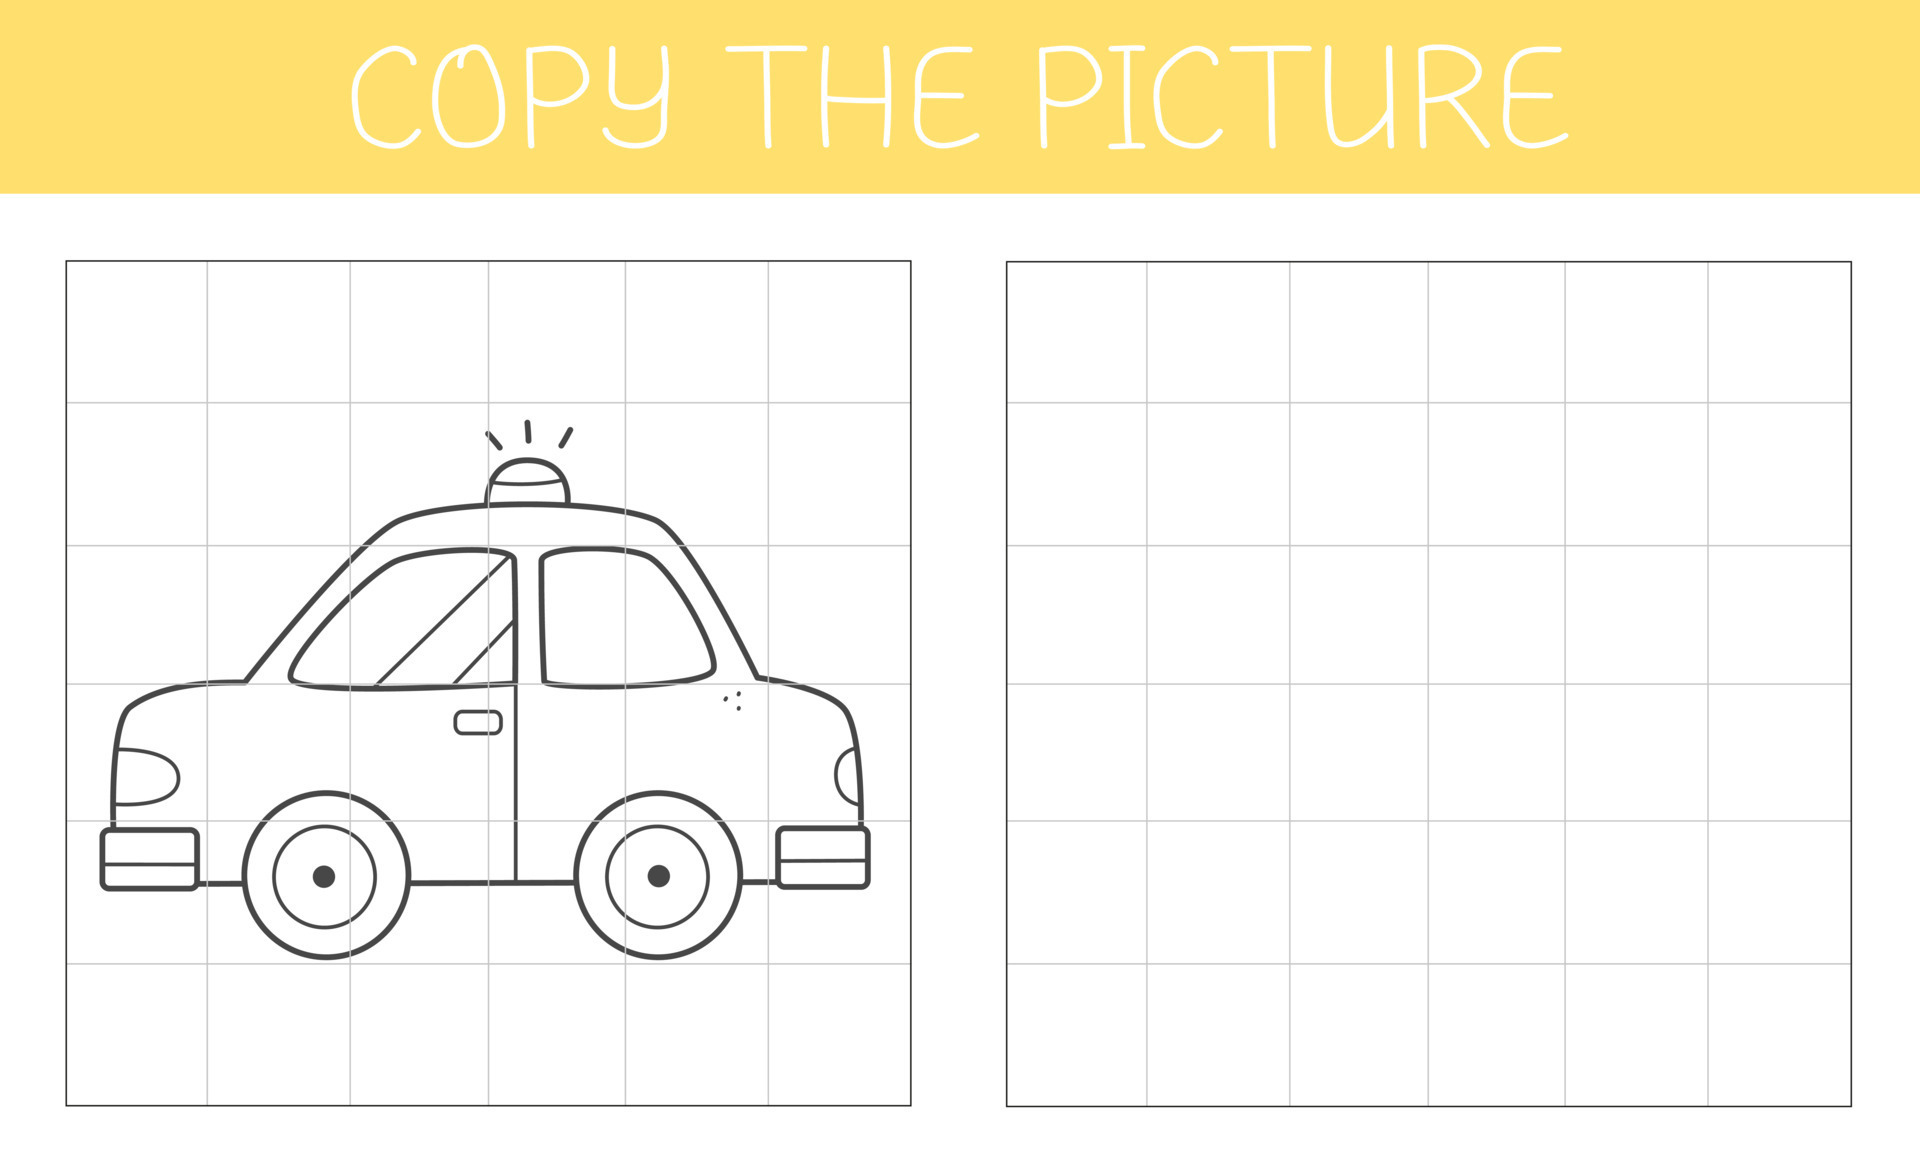 Encontre duas fotos é um jogo educacional para crianças com carro carro  bonito dos desenhos animados ilustração em vetor